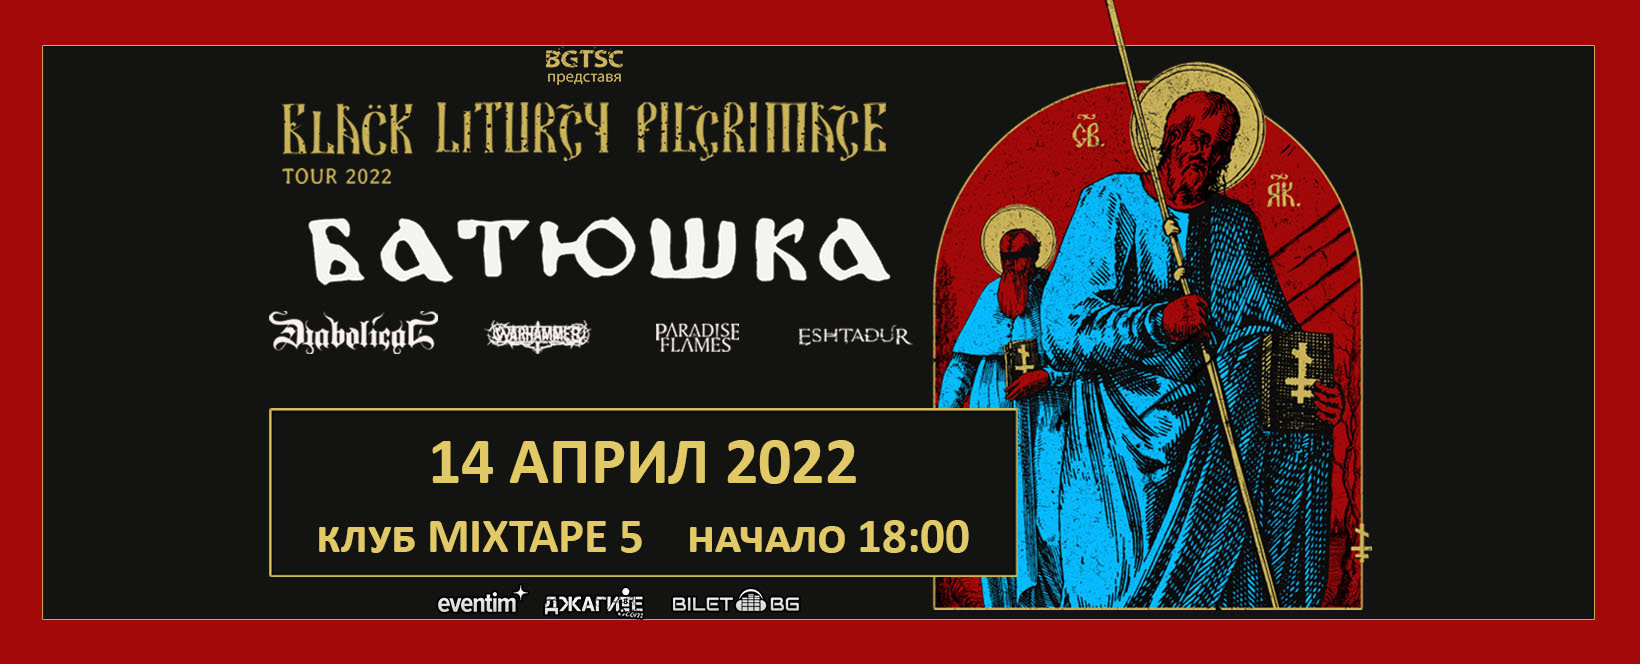 Култовата полска група BATUSHKA излизат на българска сцена този четвъртък